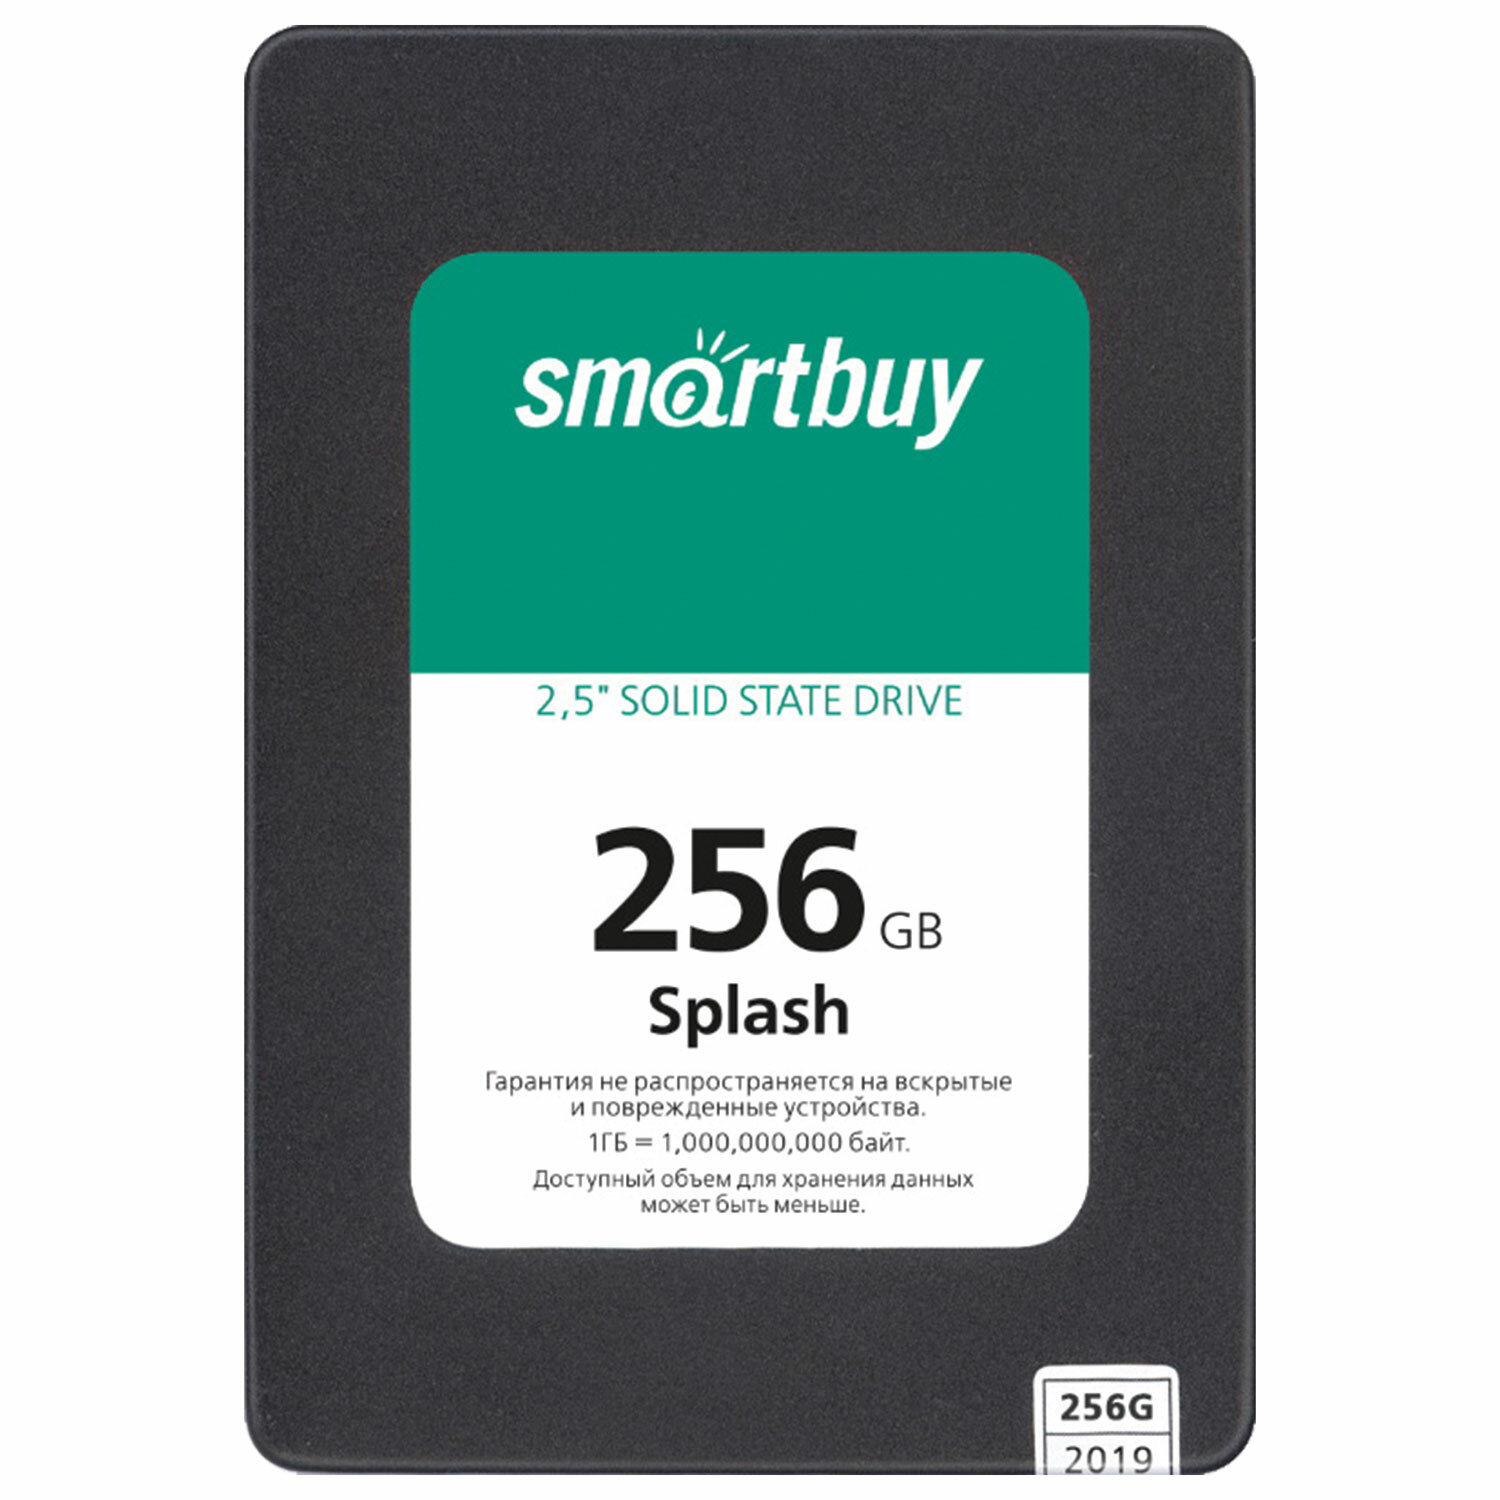 Smartbuy  SMARTBUY SSD-256GT-MX902